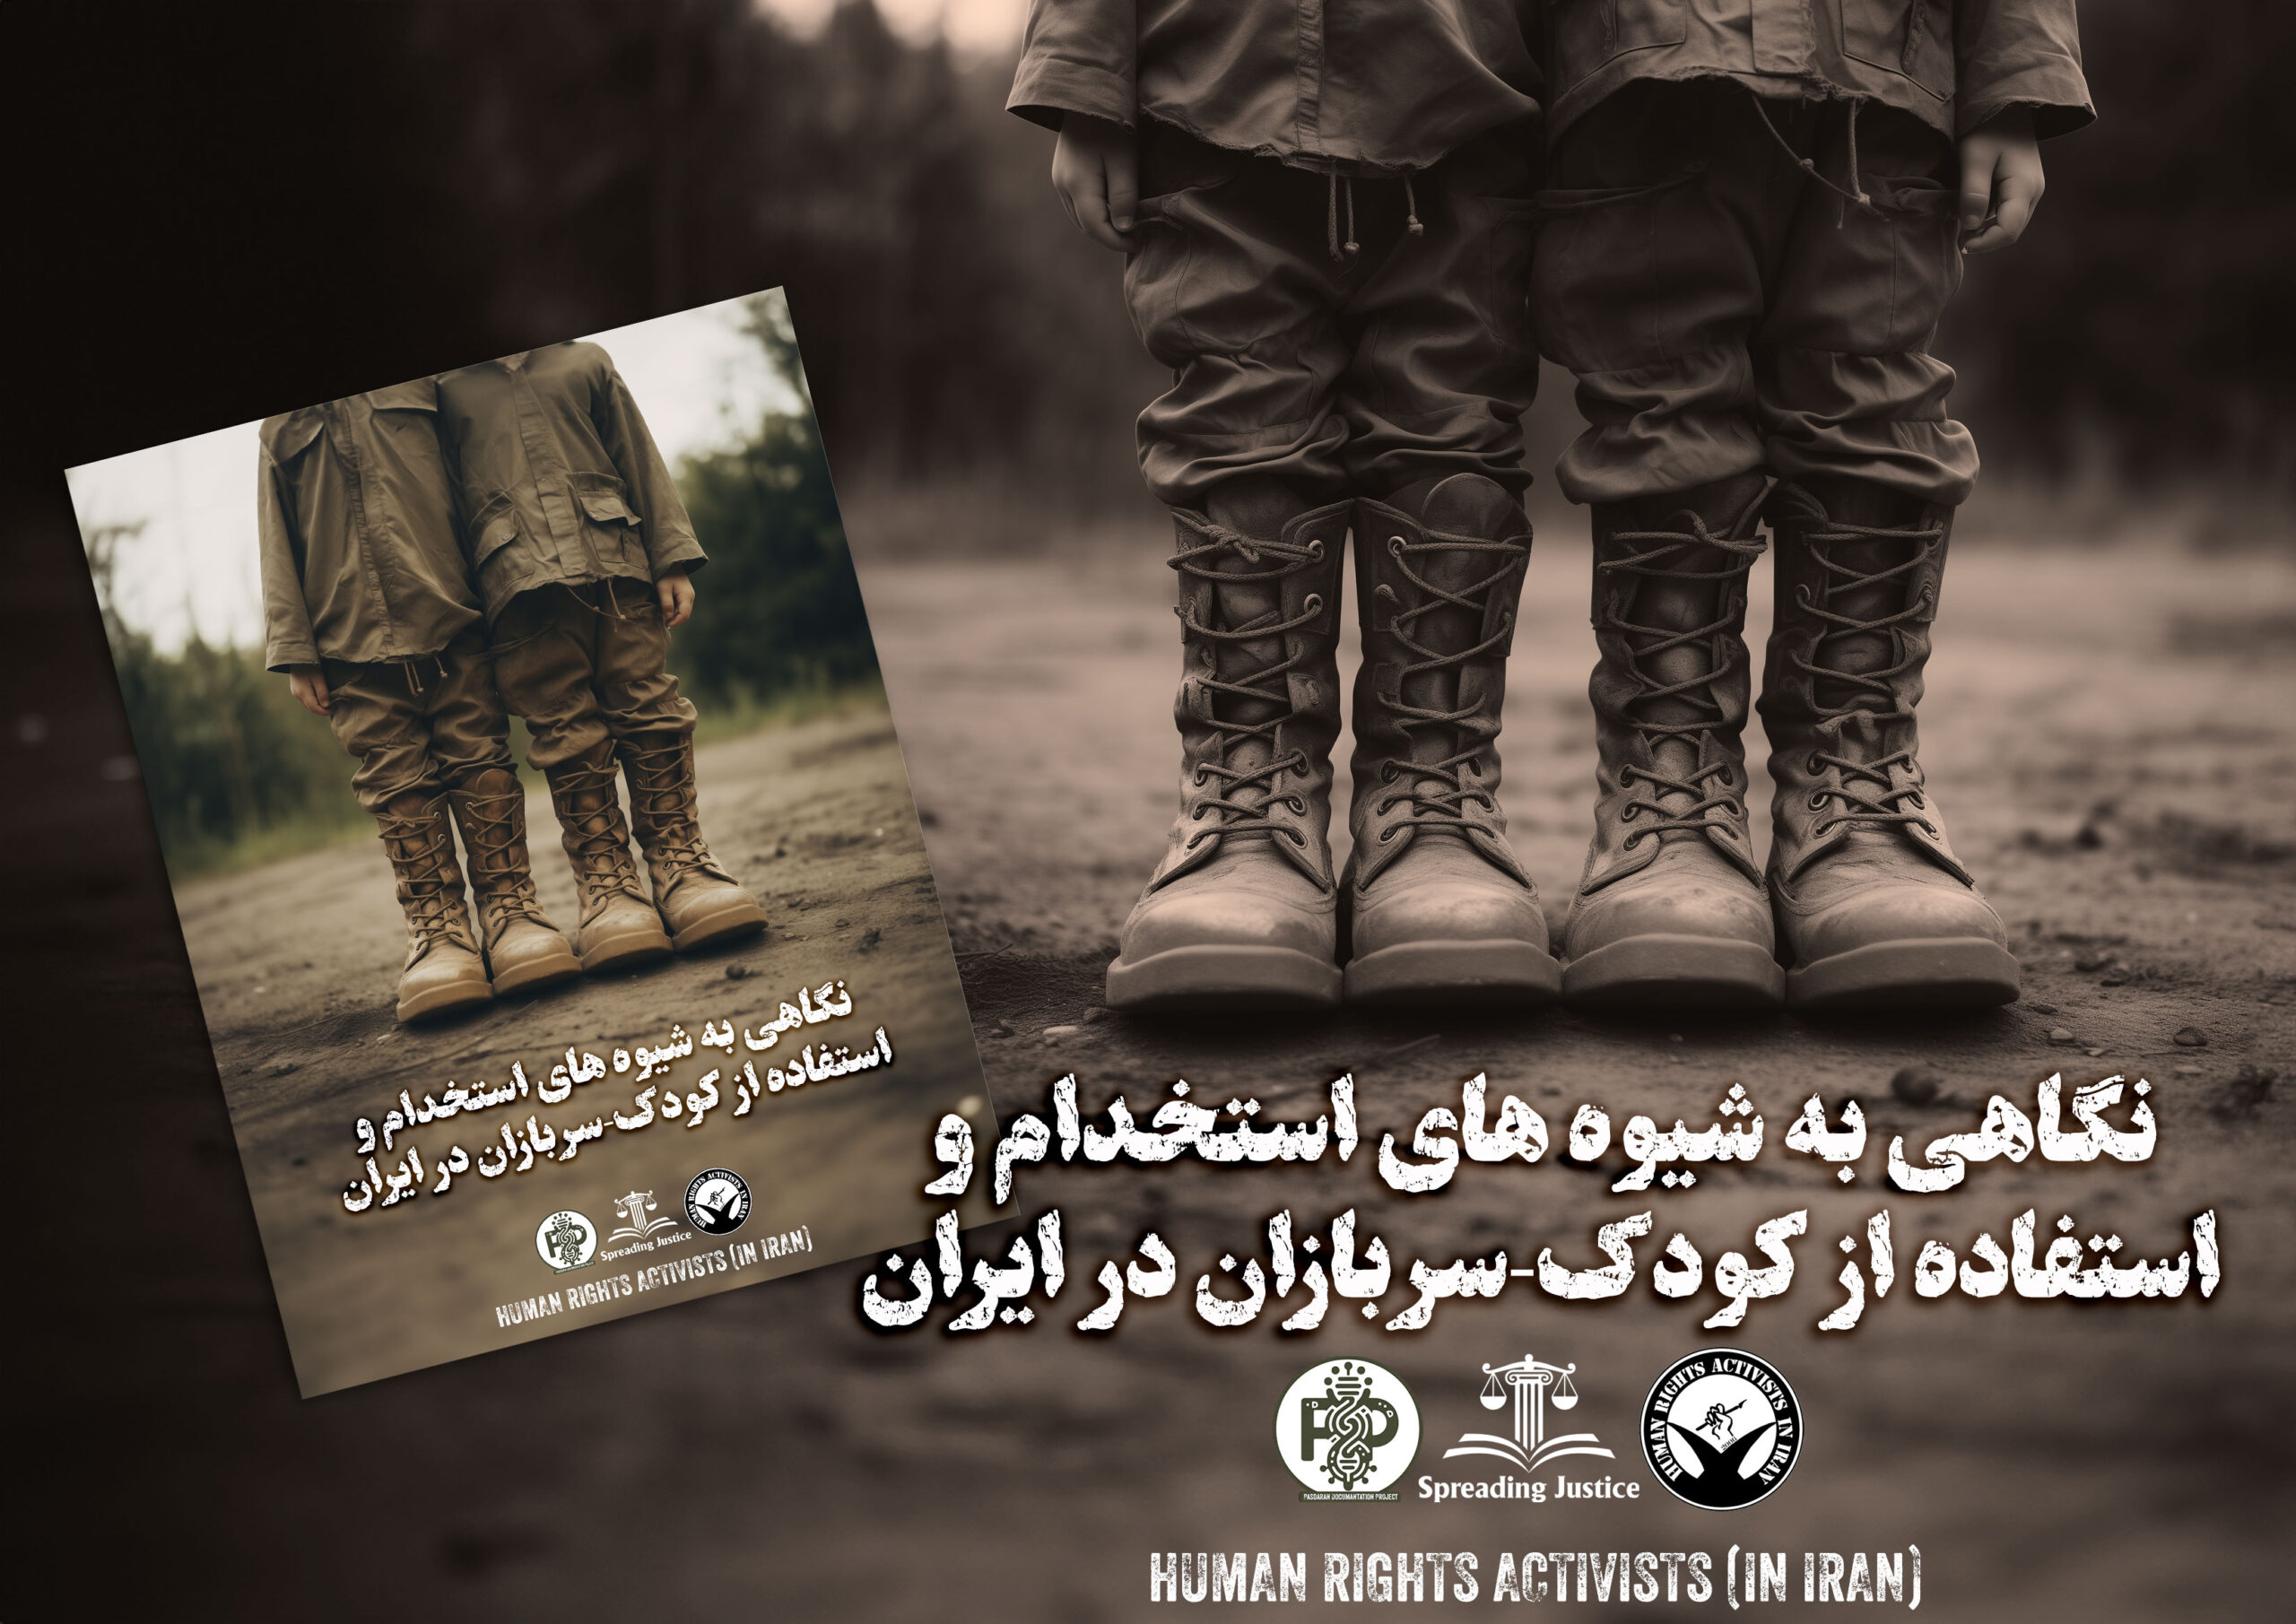 گزارش جامع از جذب و استفاده از کودک سربازان در جنگ توسط ایران